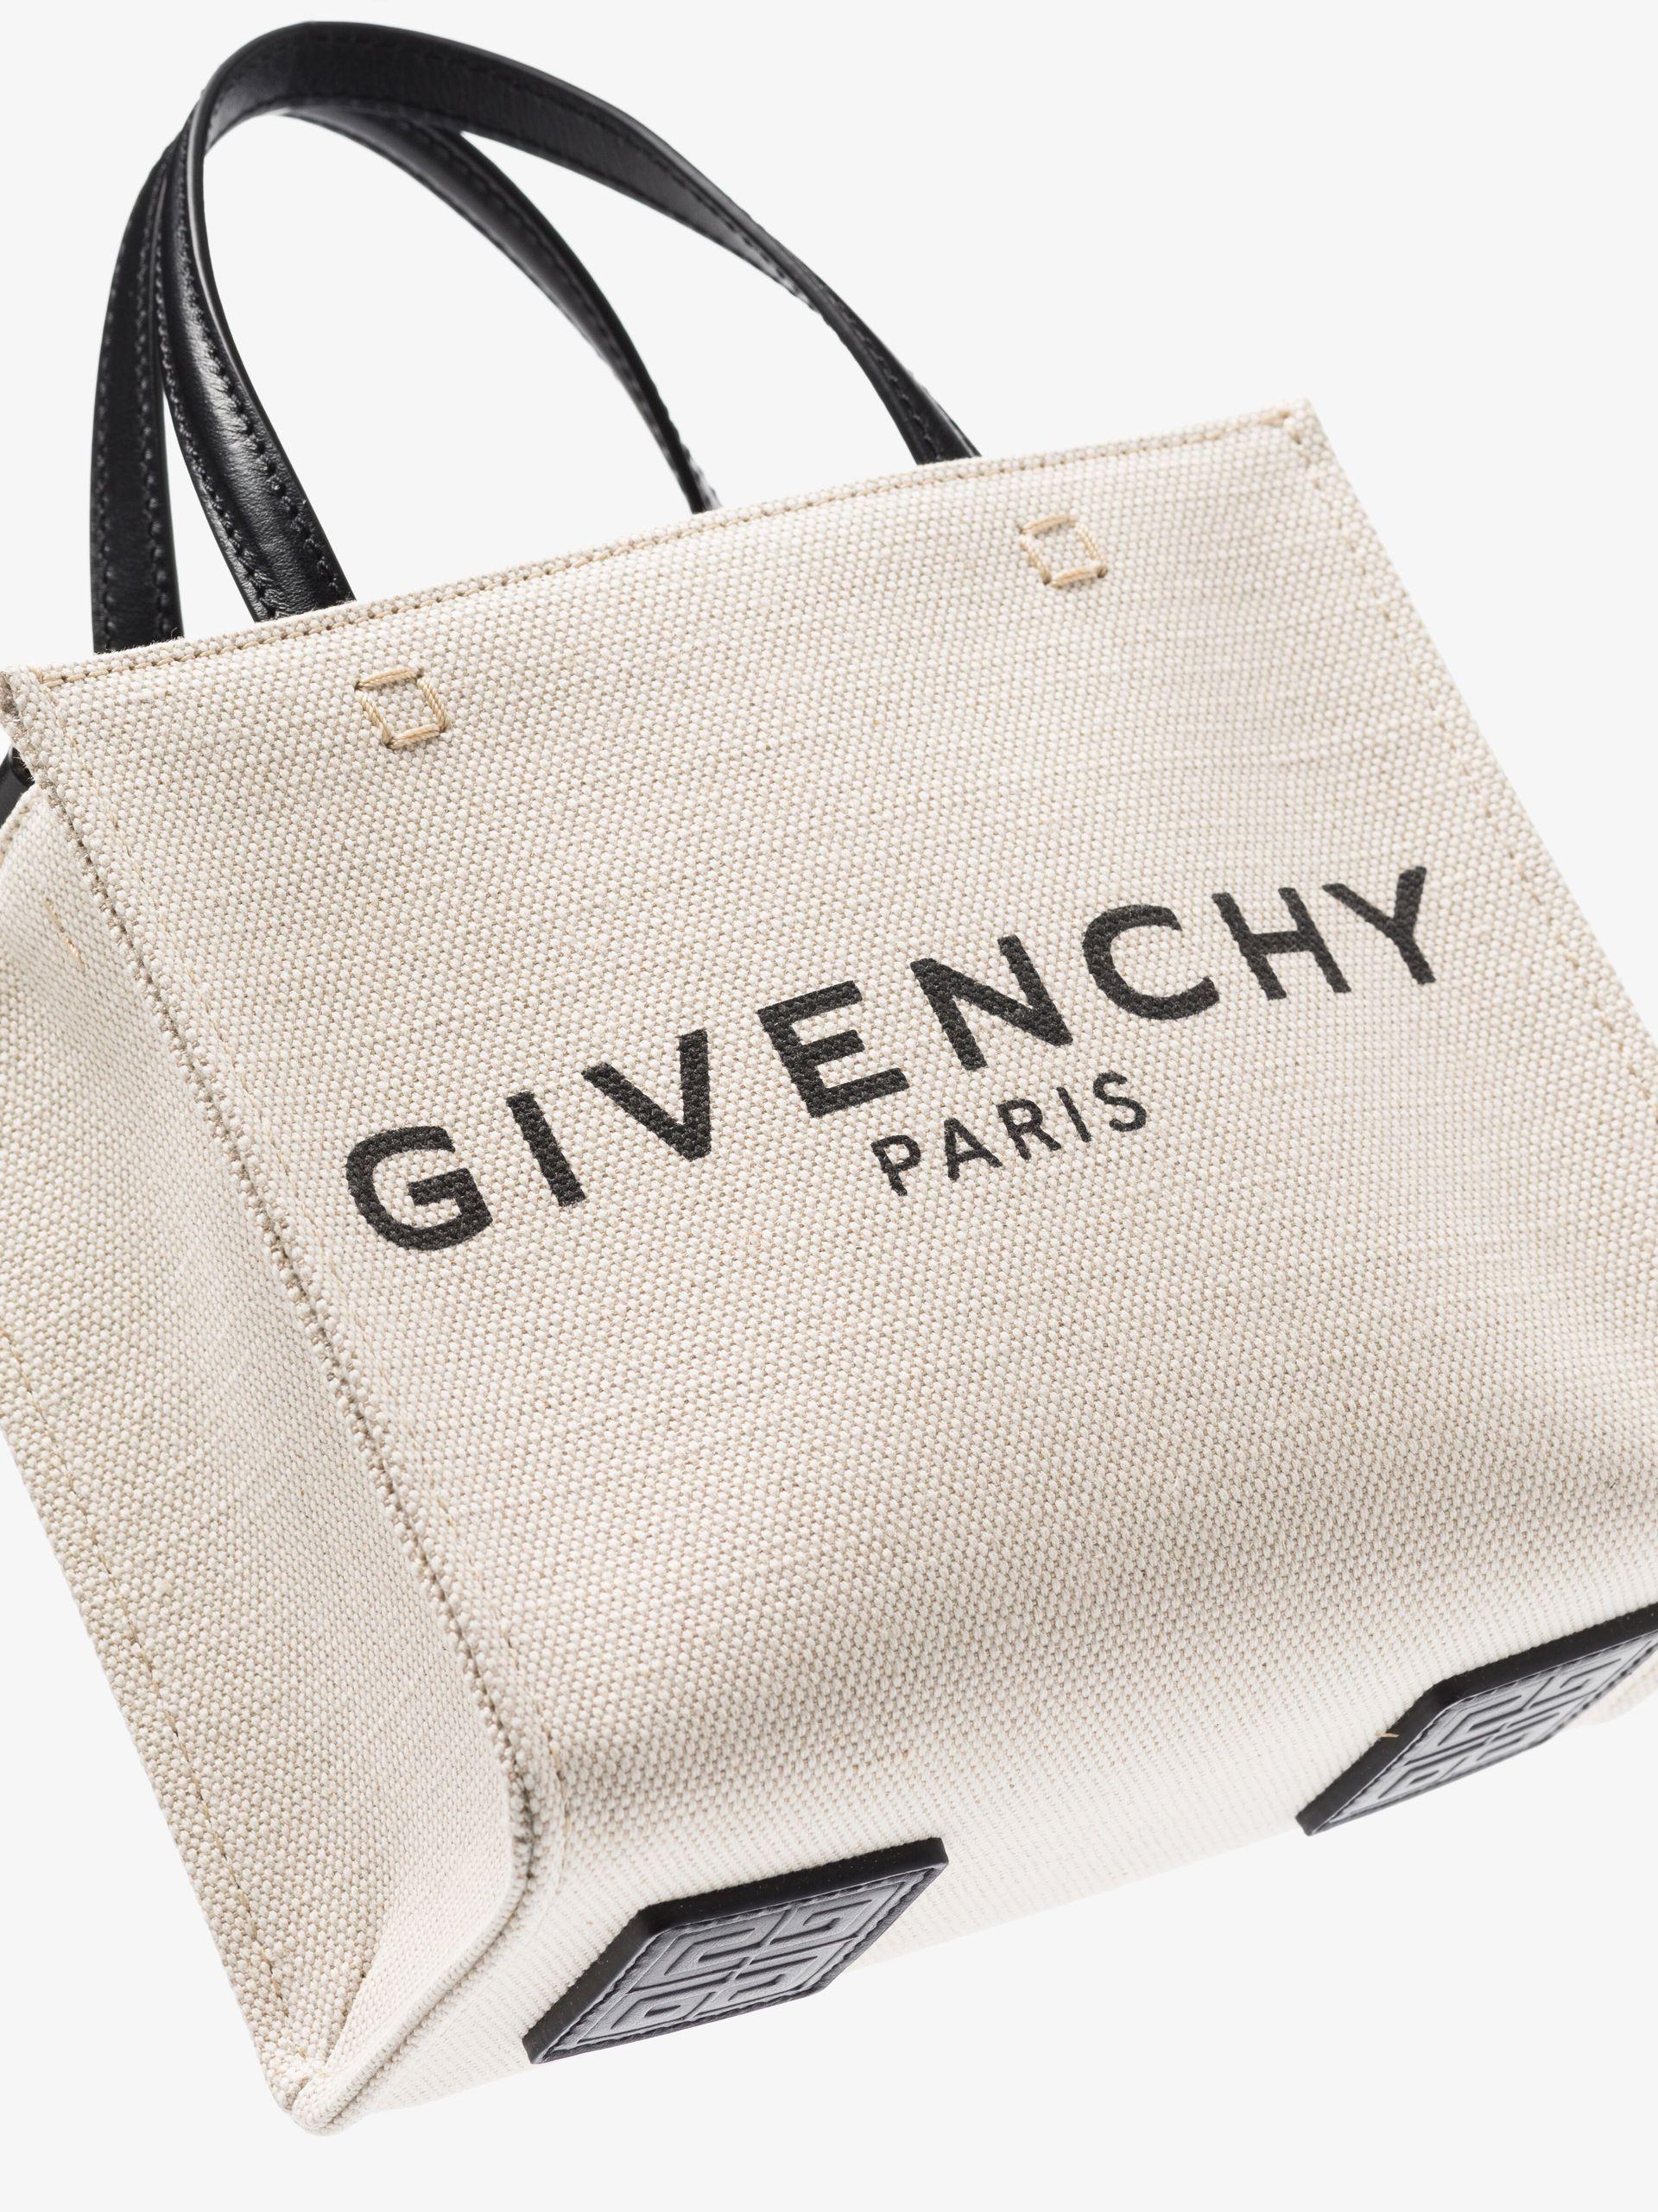 Beskrive gentagelse Overtræder Givenchy Neutral Mini Logo Canvas Tote Bag | Lyst